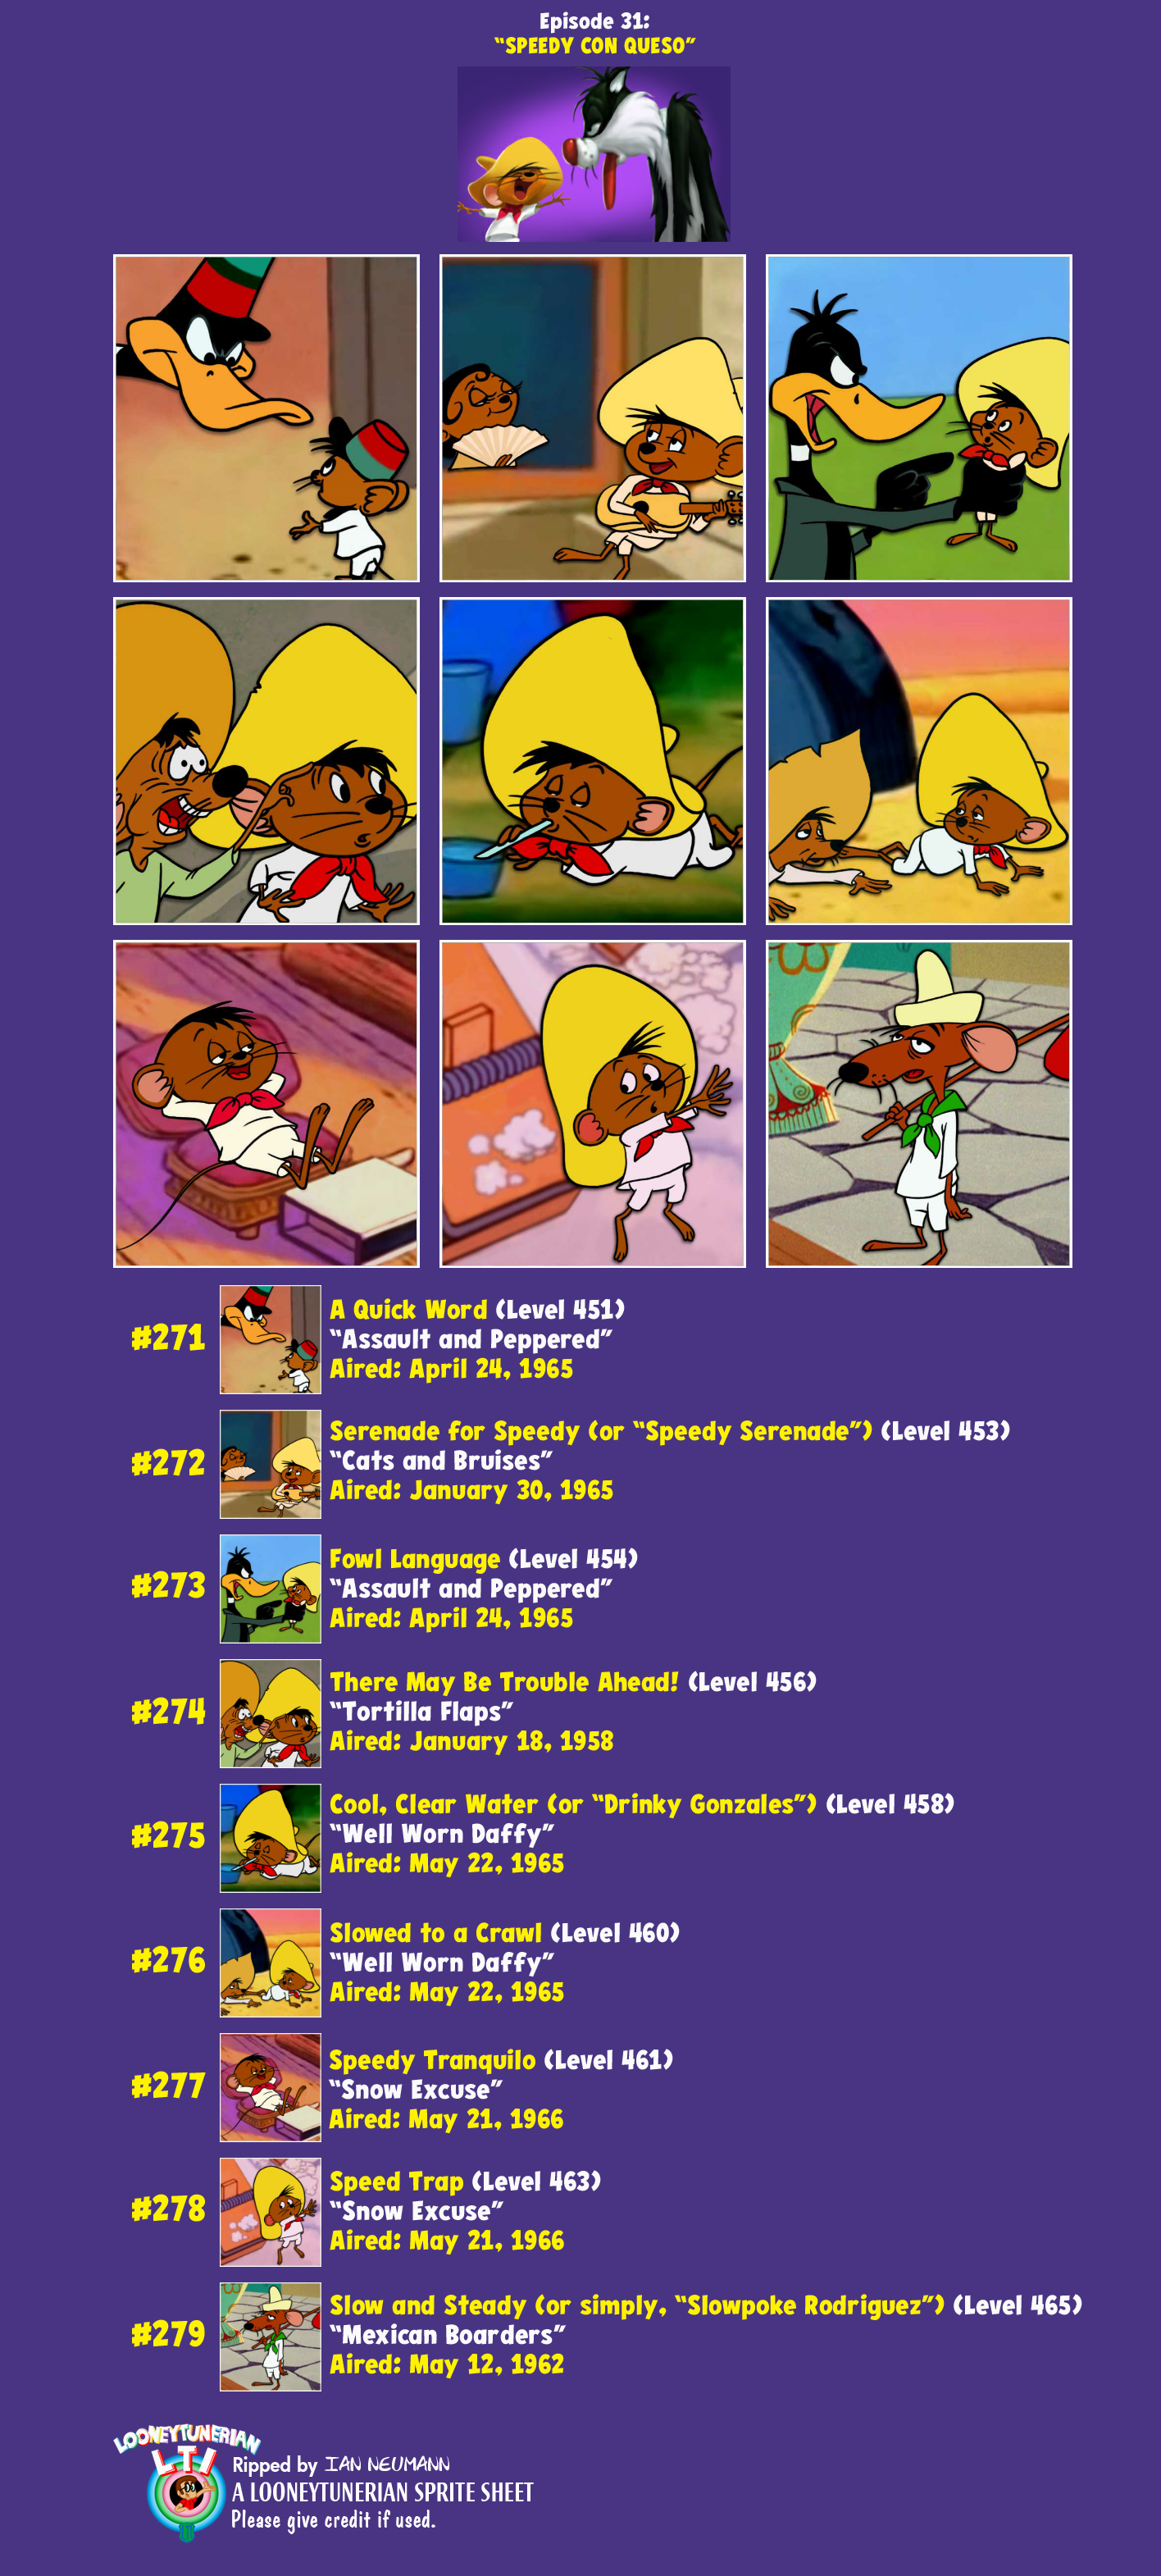 Looney Tunes Dash! - Episode 31: "Speedy Con Queso"